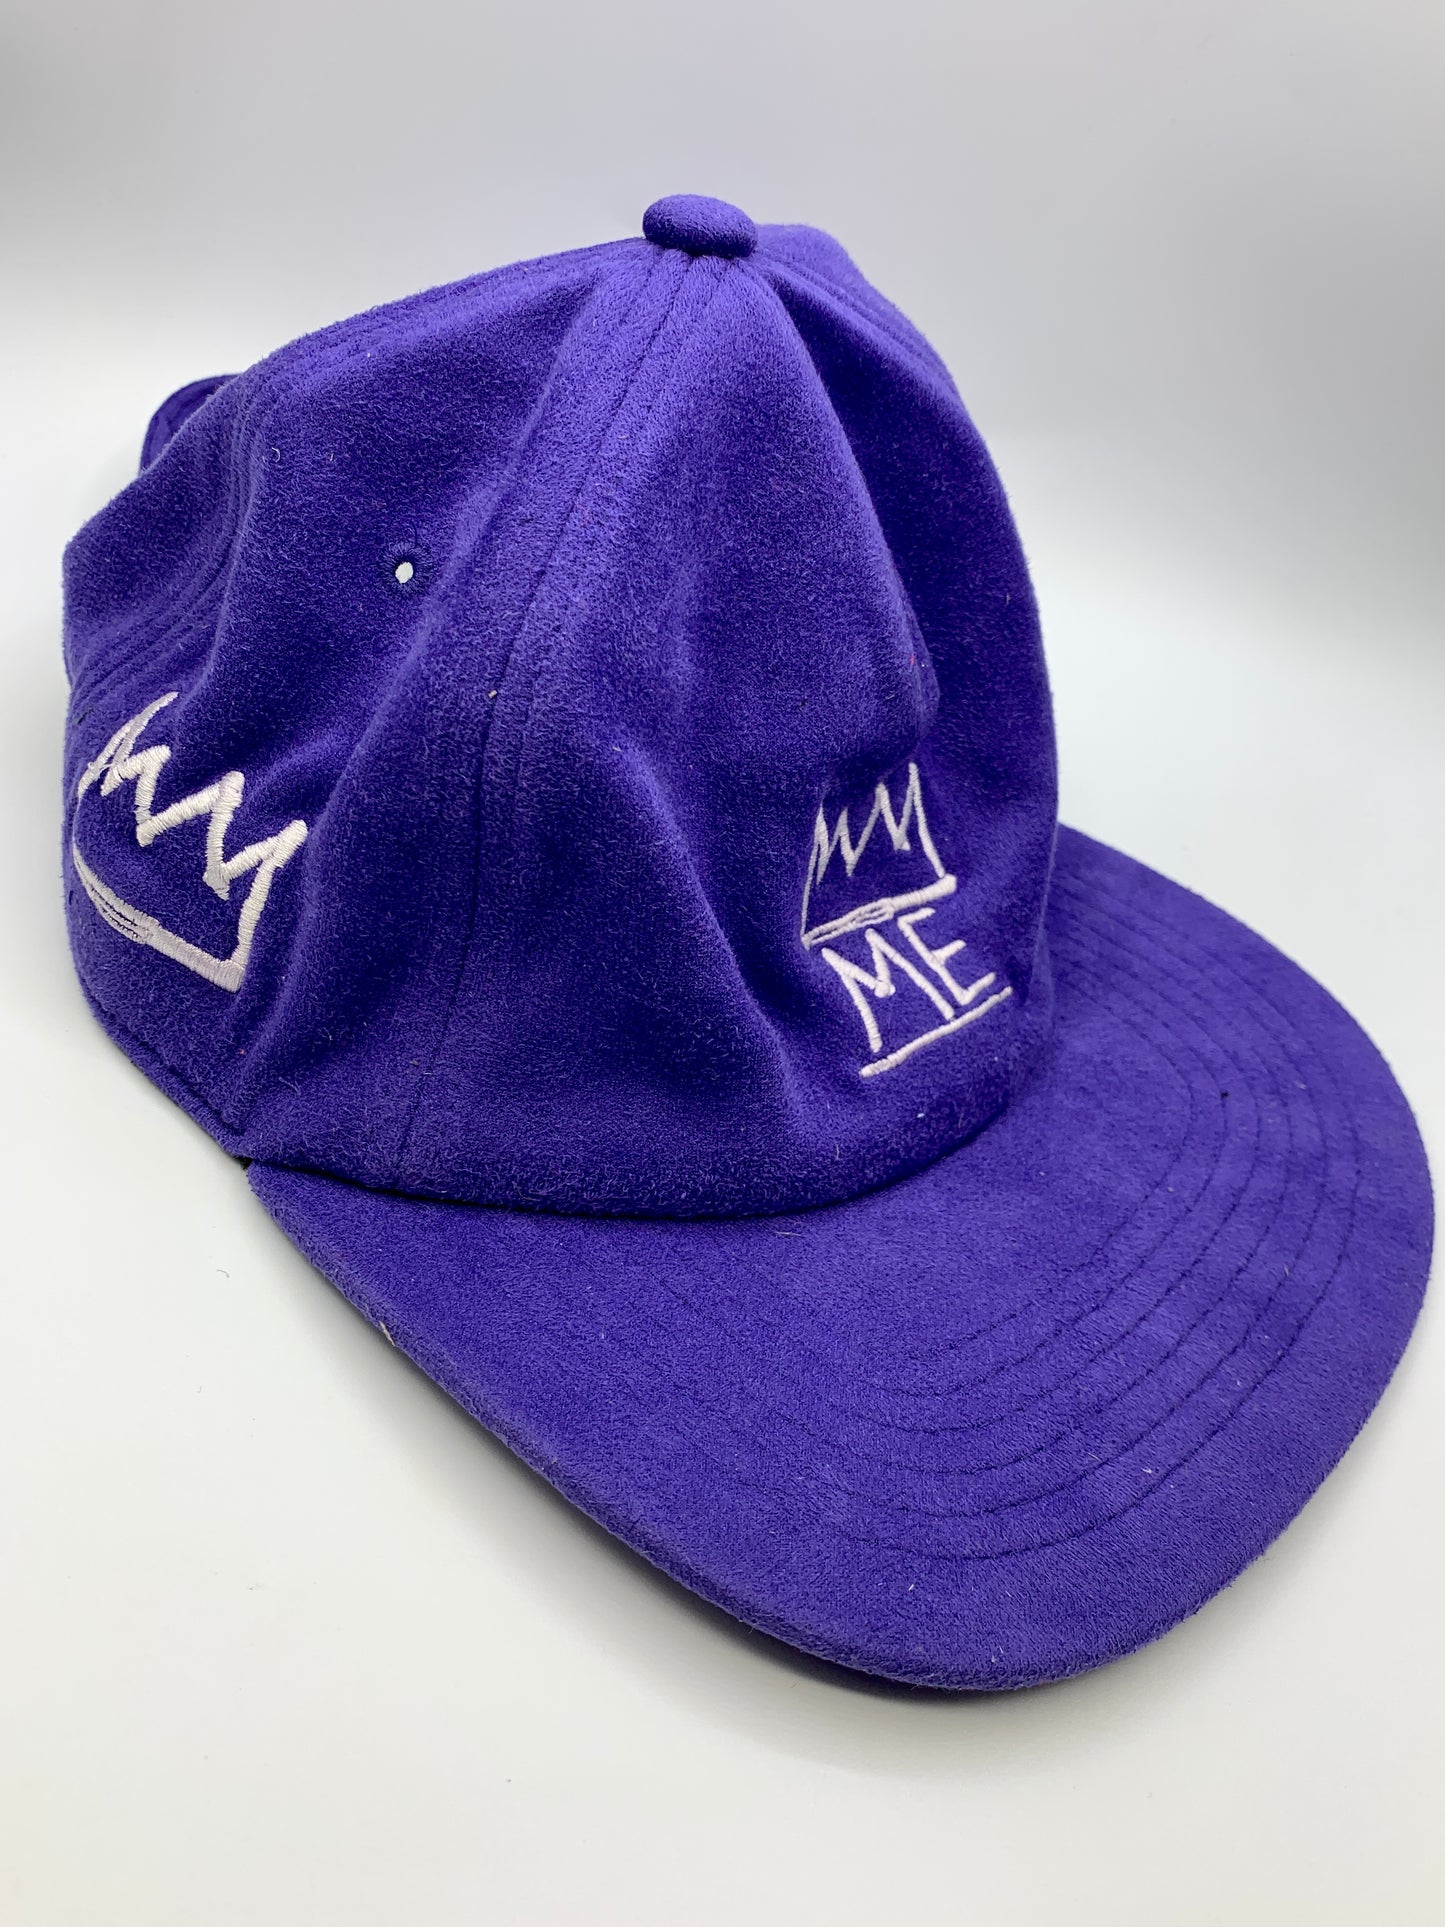 Purple Soft Suede Flat Brim Hat with White Krown